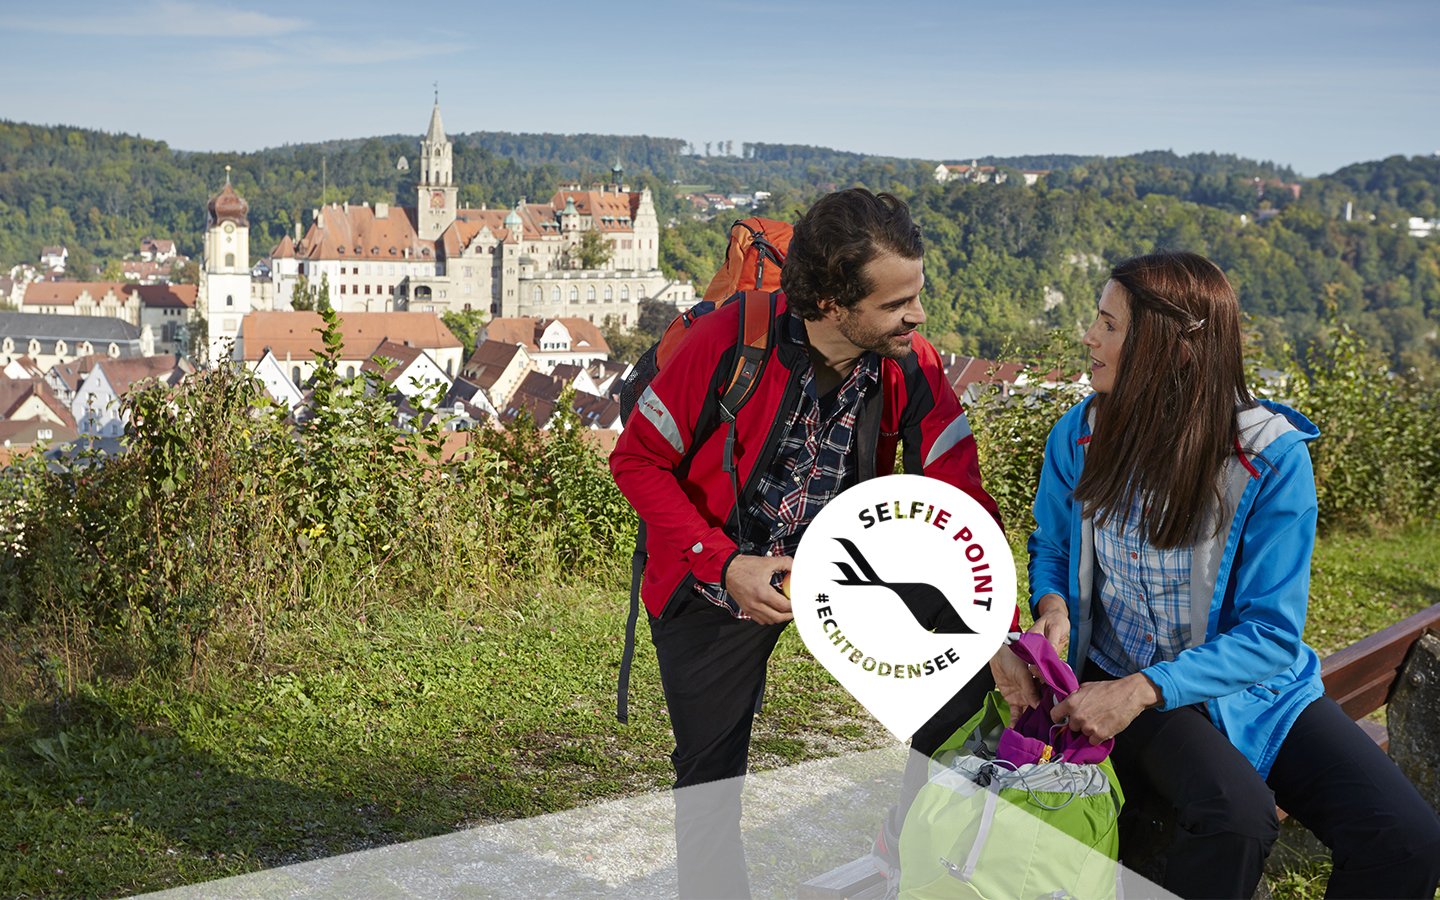 Fotopunkt mit Panoramablick auf die Stadt Sigmaringen